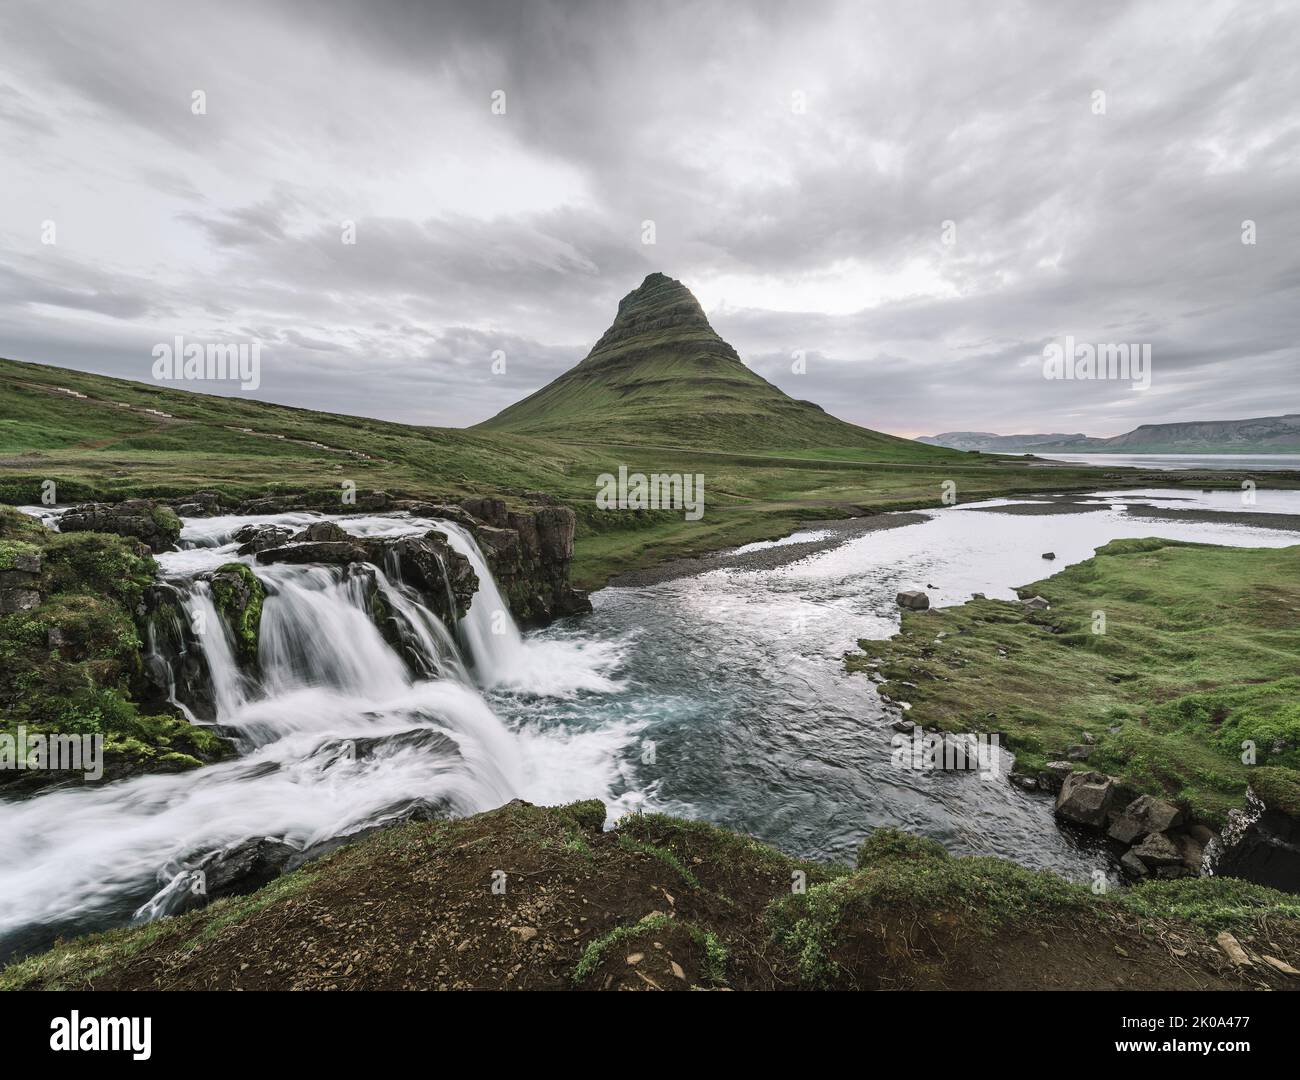 Kirkjufellsfoss waterfall and Kirkjufell mountain near the city of Grundarfjordur in Iceland Stock Photo